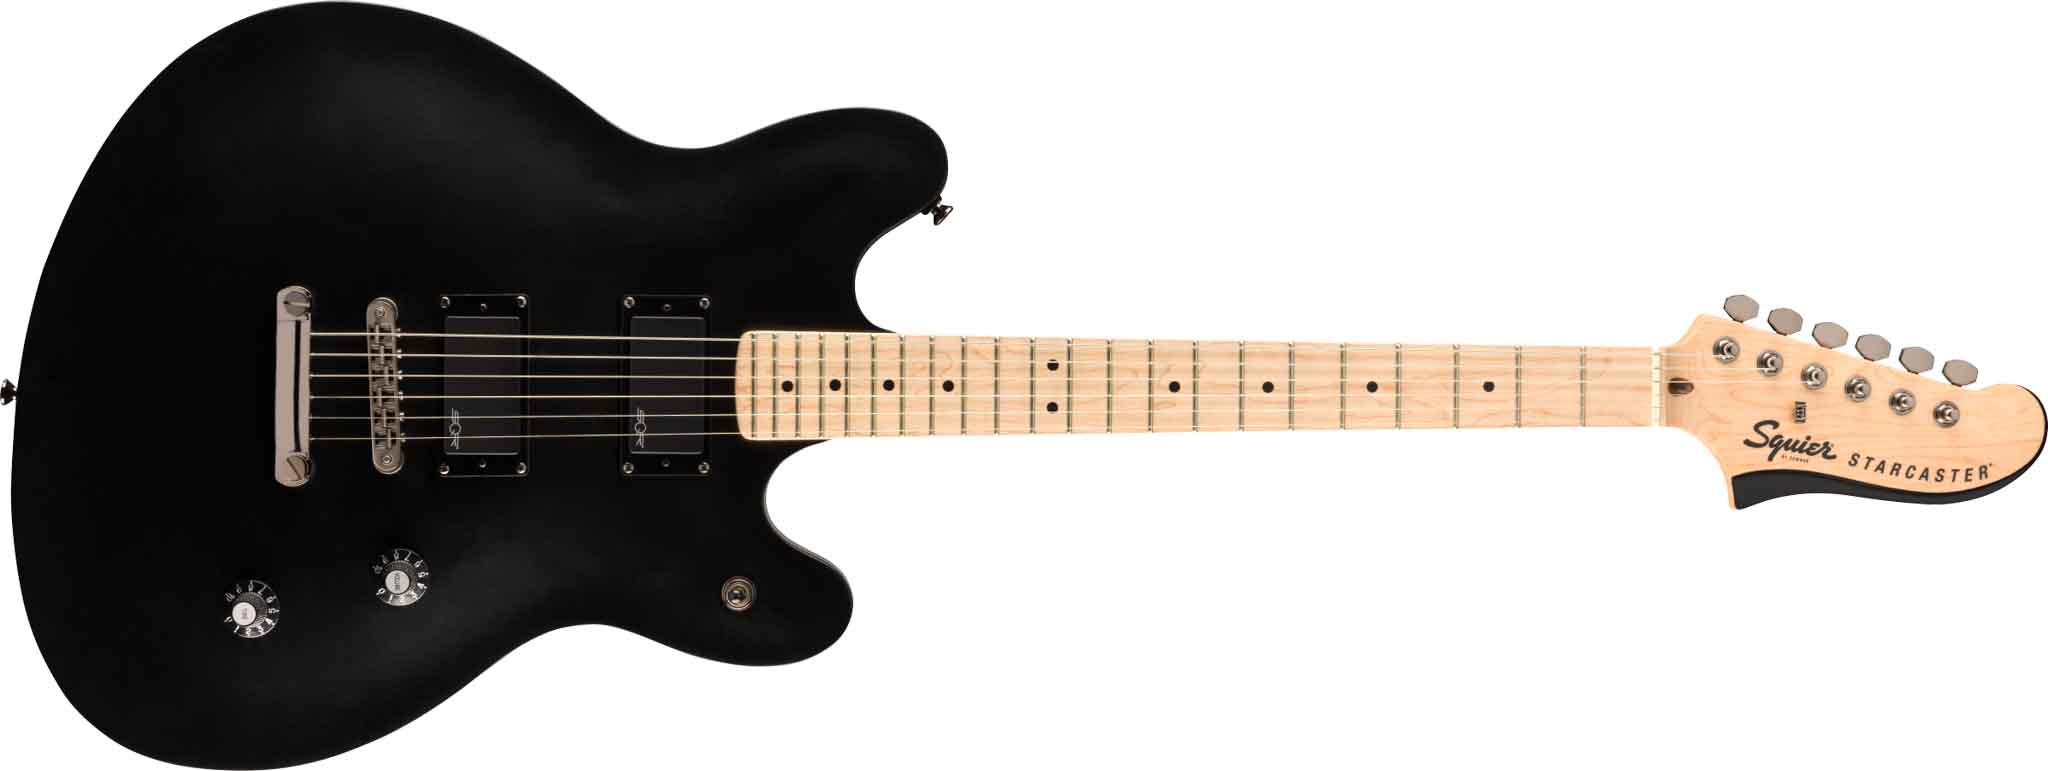 Billede af Fender Squier Contemporary Active Starcaster El-guitar (Flat Black)